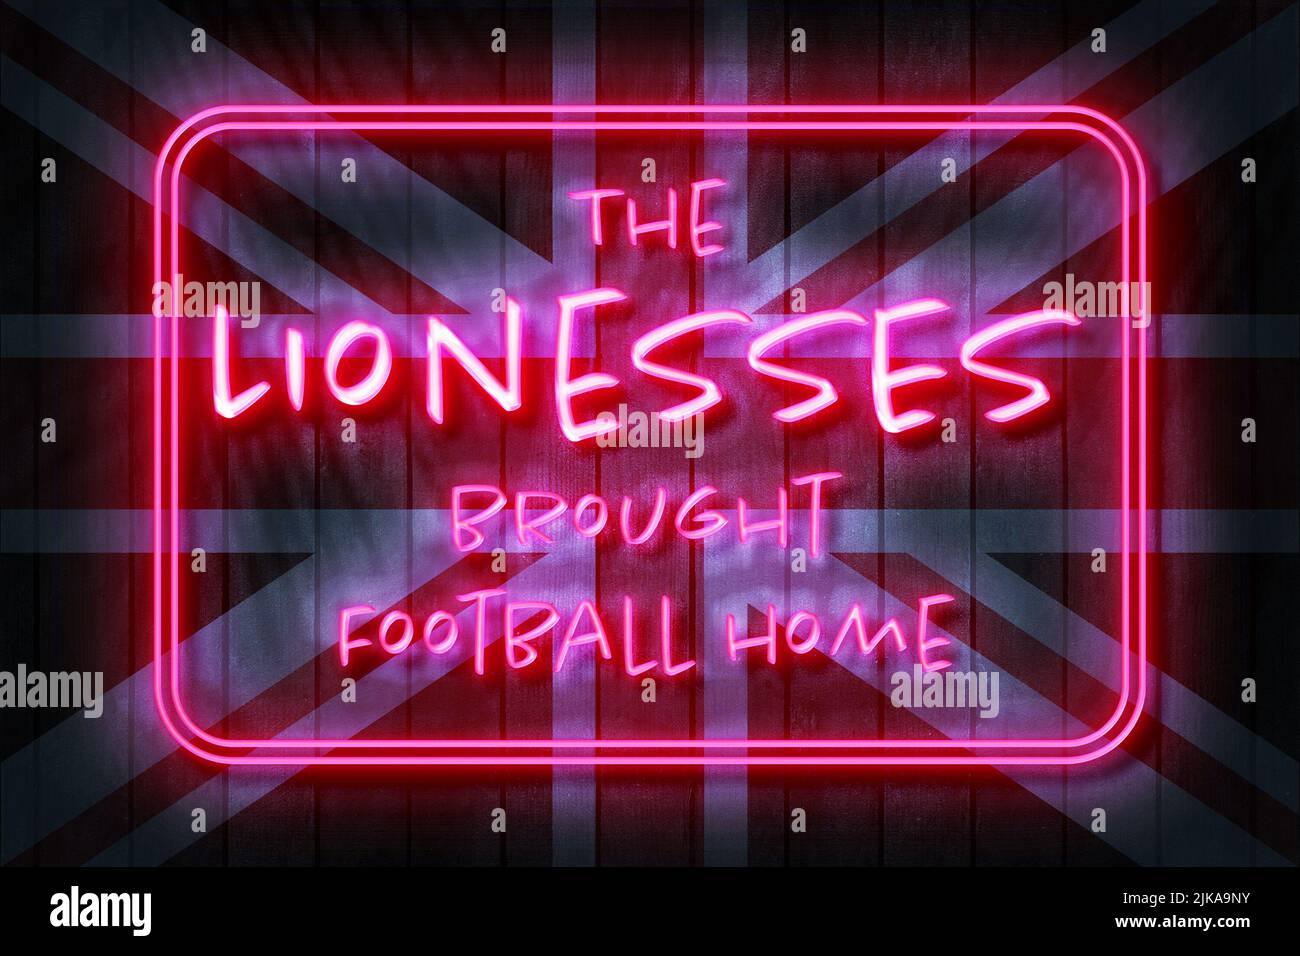 Lionesses Traid It Home 3D ilustración en un fondo de la bandera de la unión. Foto de stock